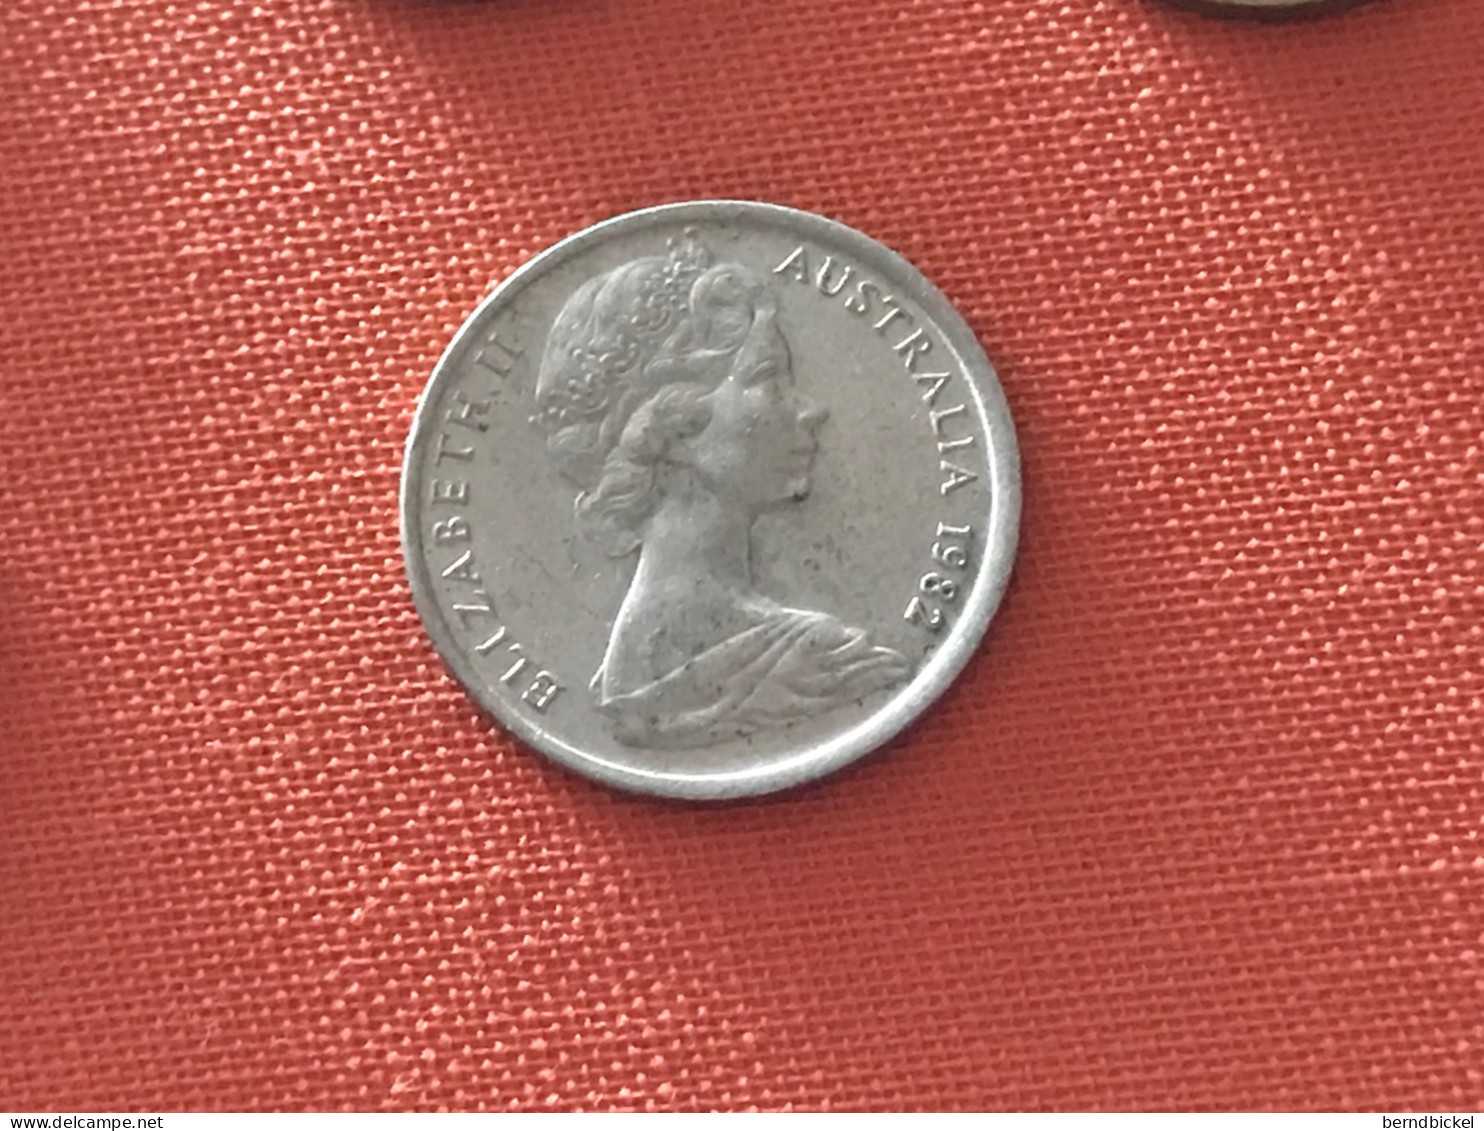 Münze Münzen Umlaufmünze Australien 5 Cent 1982 - Cent